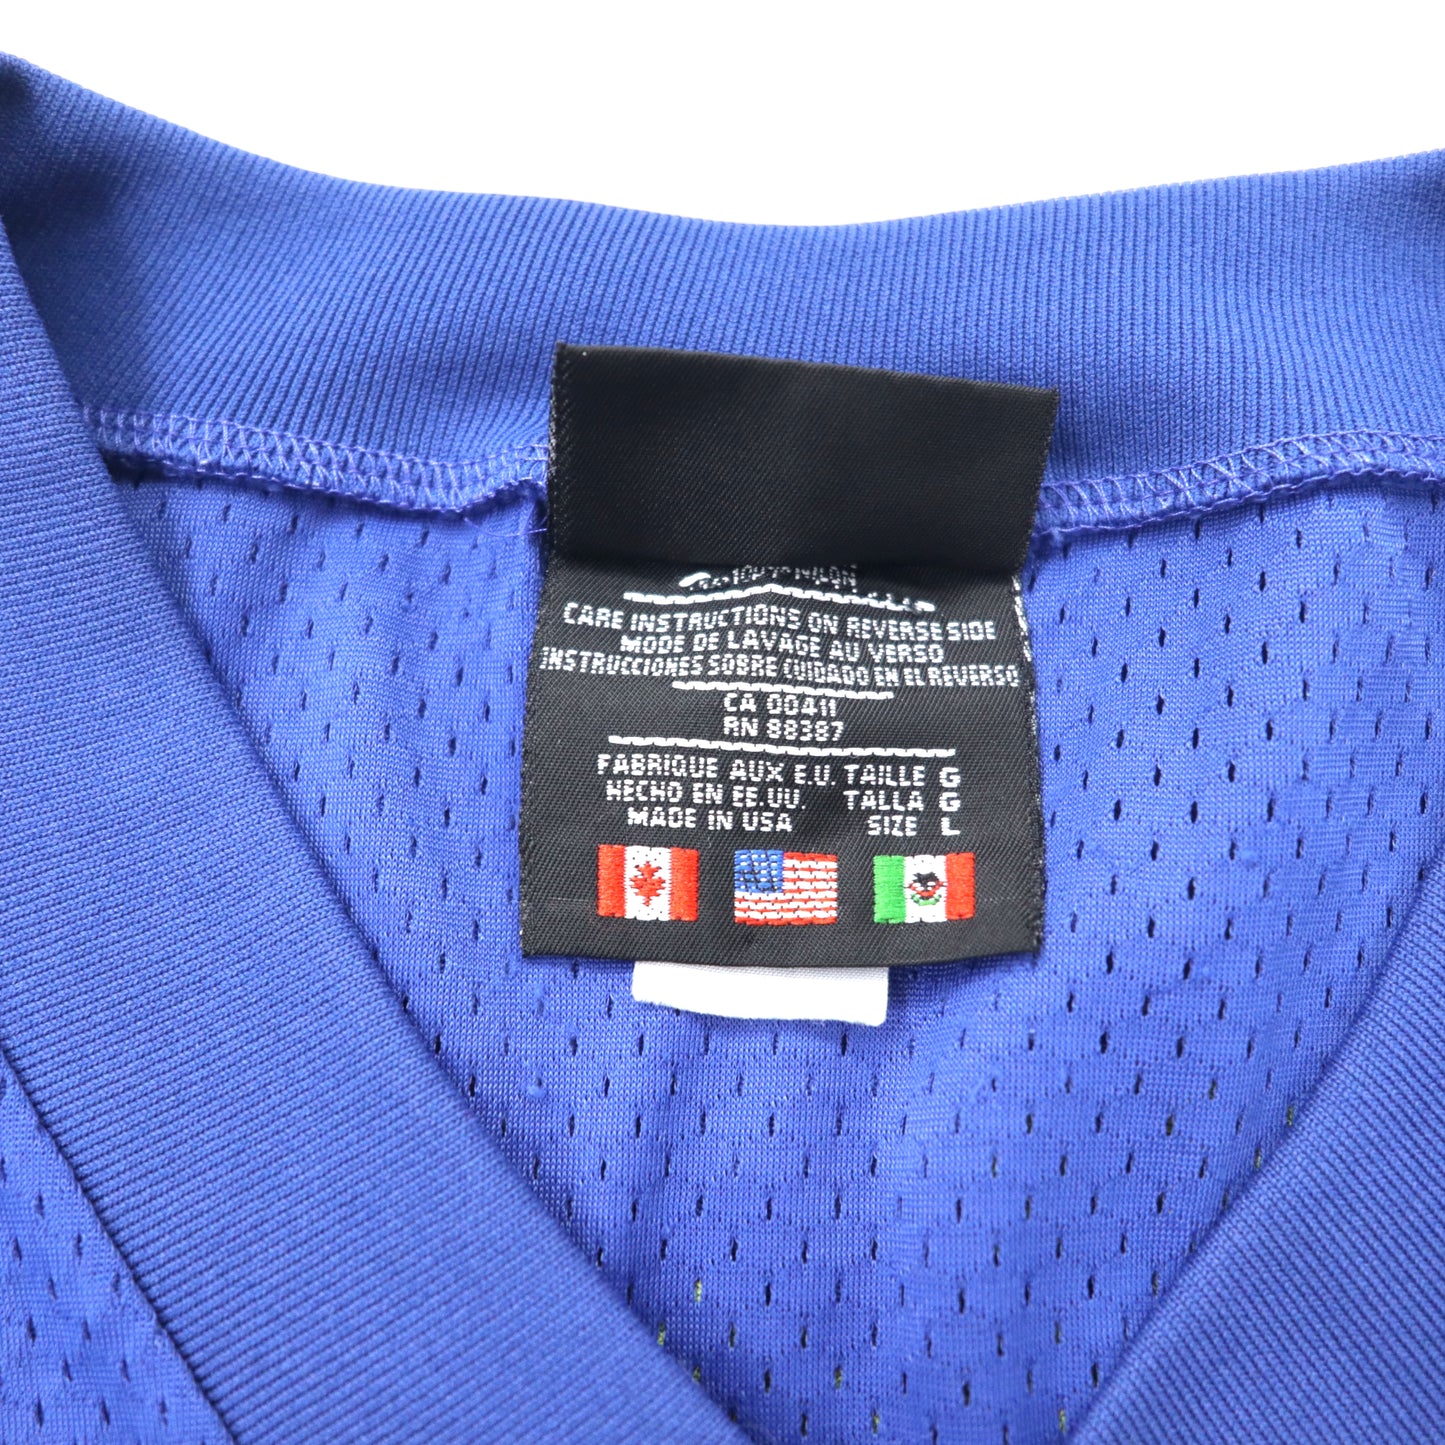 USA製 adidas ビッグサイズ メッシュ ゲームシャツ L ブルー ナイロン トレフォイルロゴ 国旗タグ 90年代